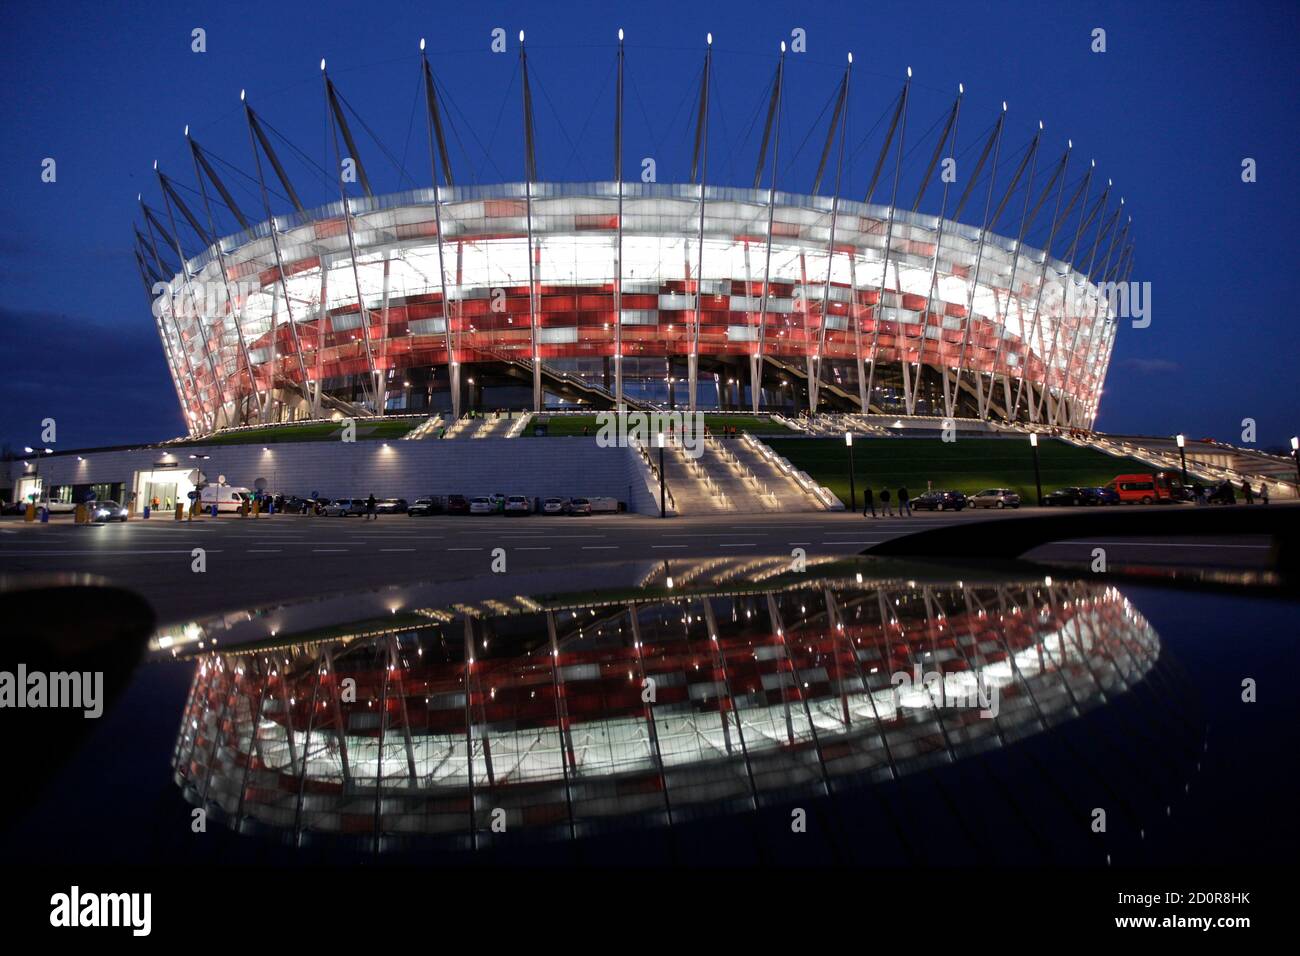 Большие стадионы европы. Футбольный стадион в Варшаве. Национальный стадион (Варшава). Футбольные стадионы Европы. UEFA Euro 2012 Stadion Narodowy.